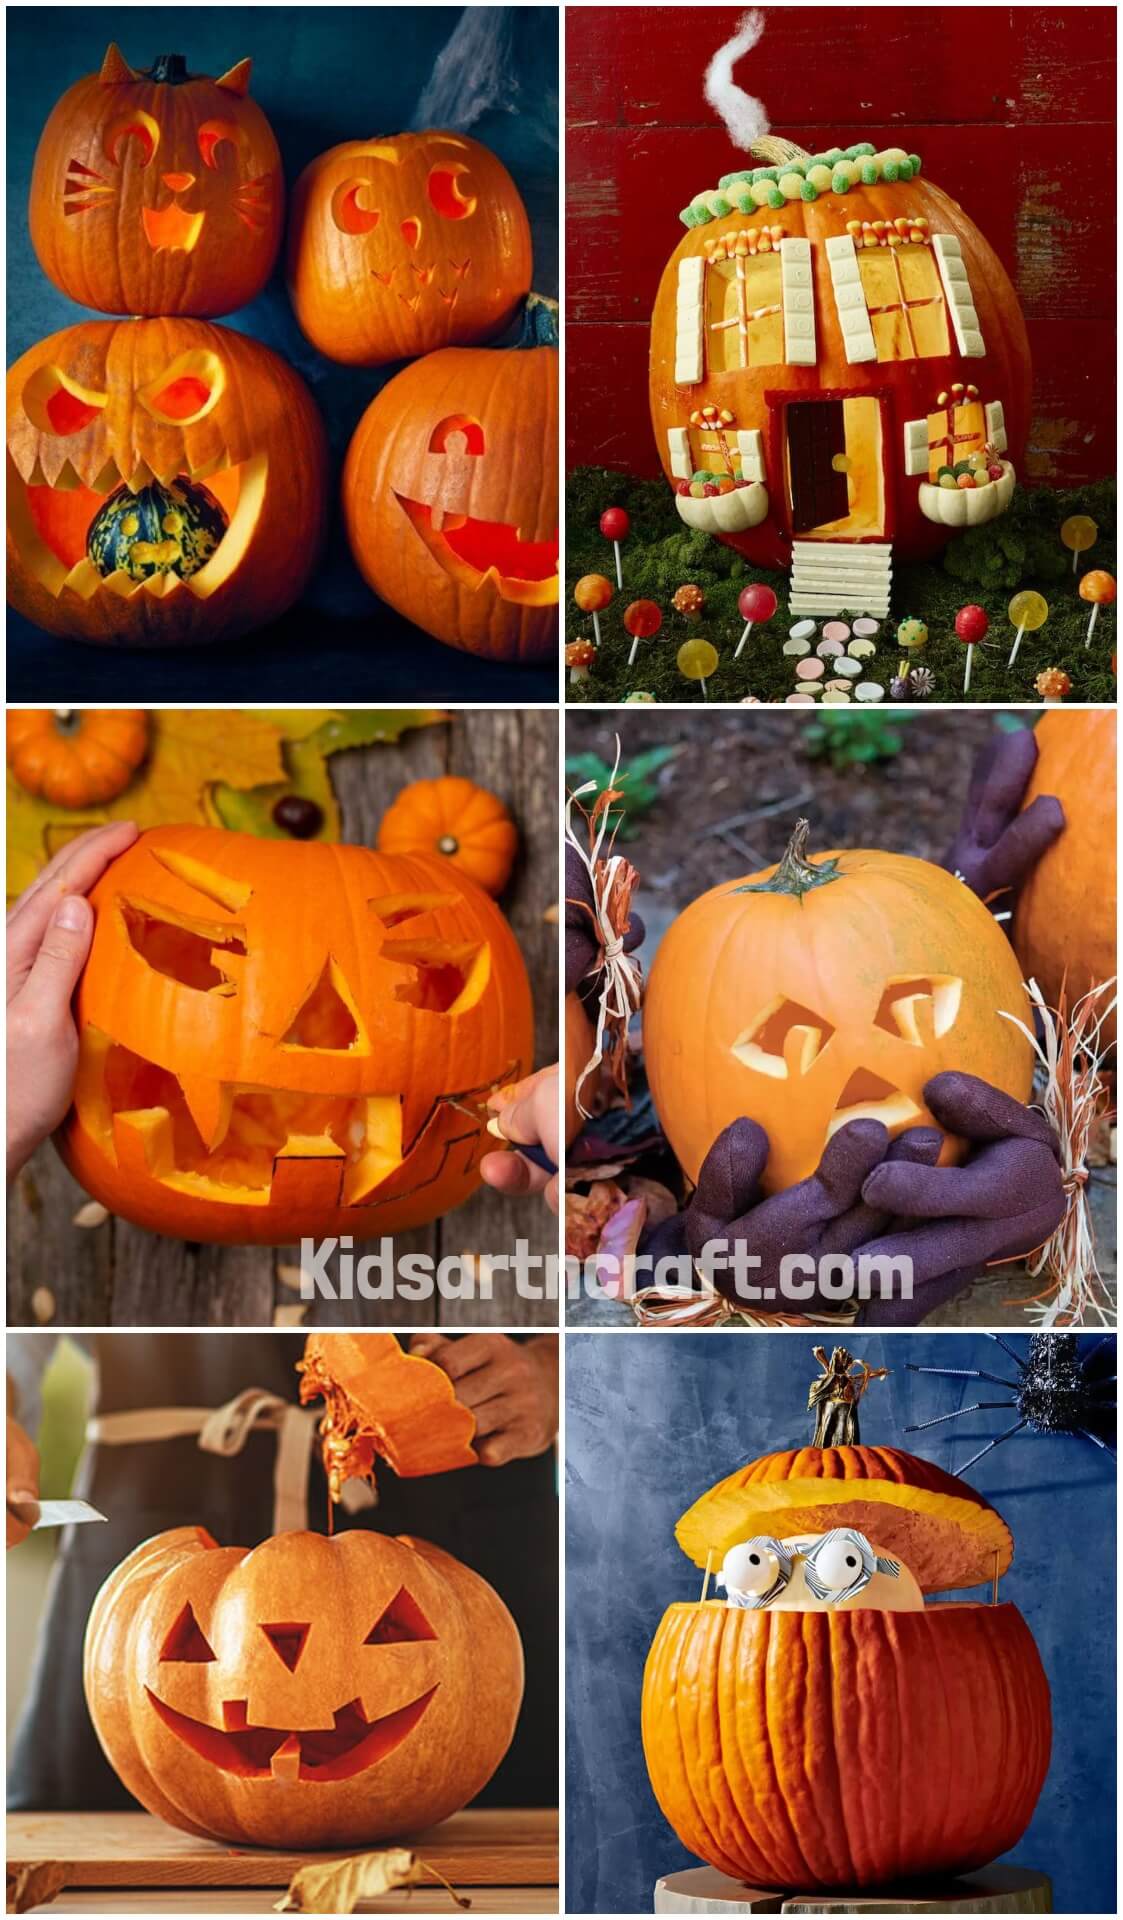 Pumpkin Carving Ideas For Halloween - Kids Art & Craft